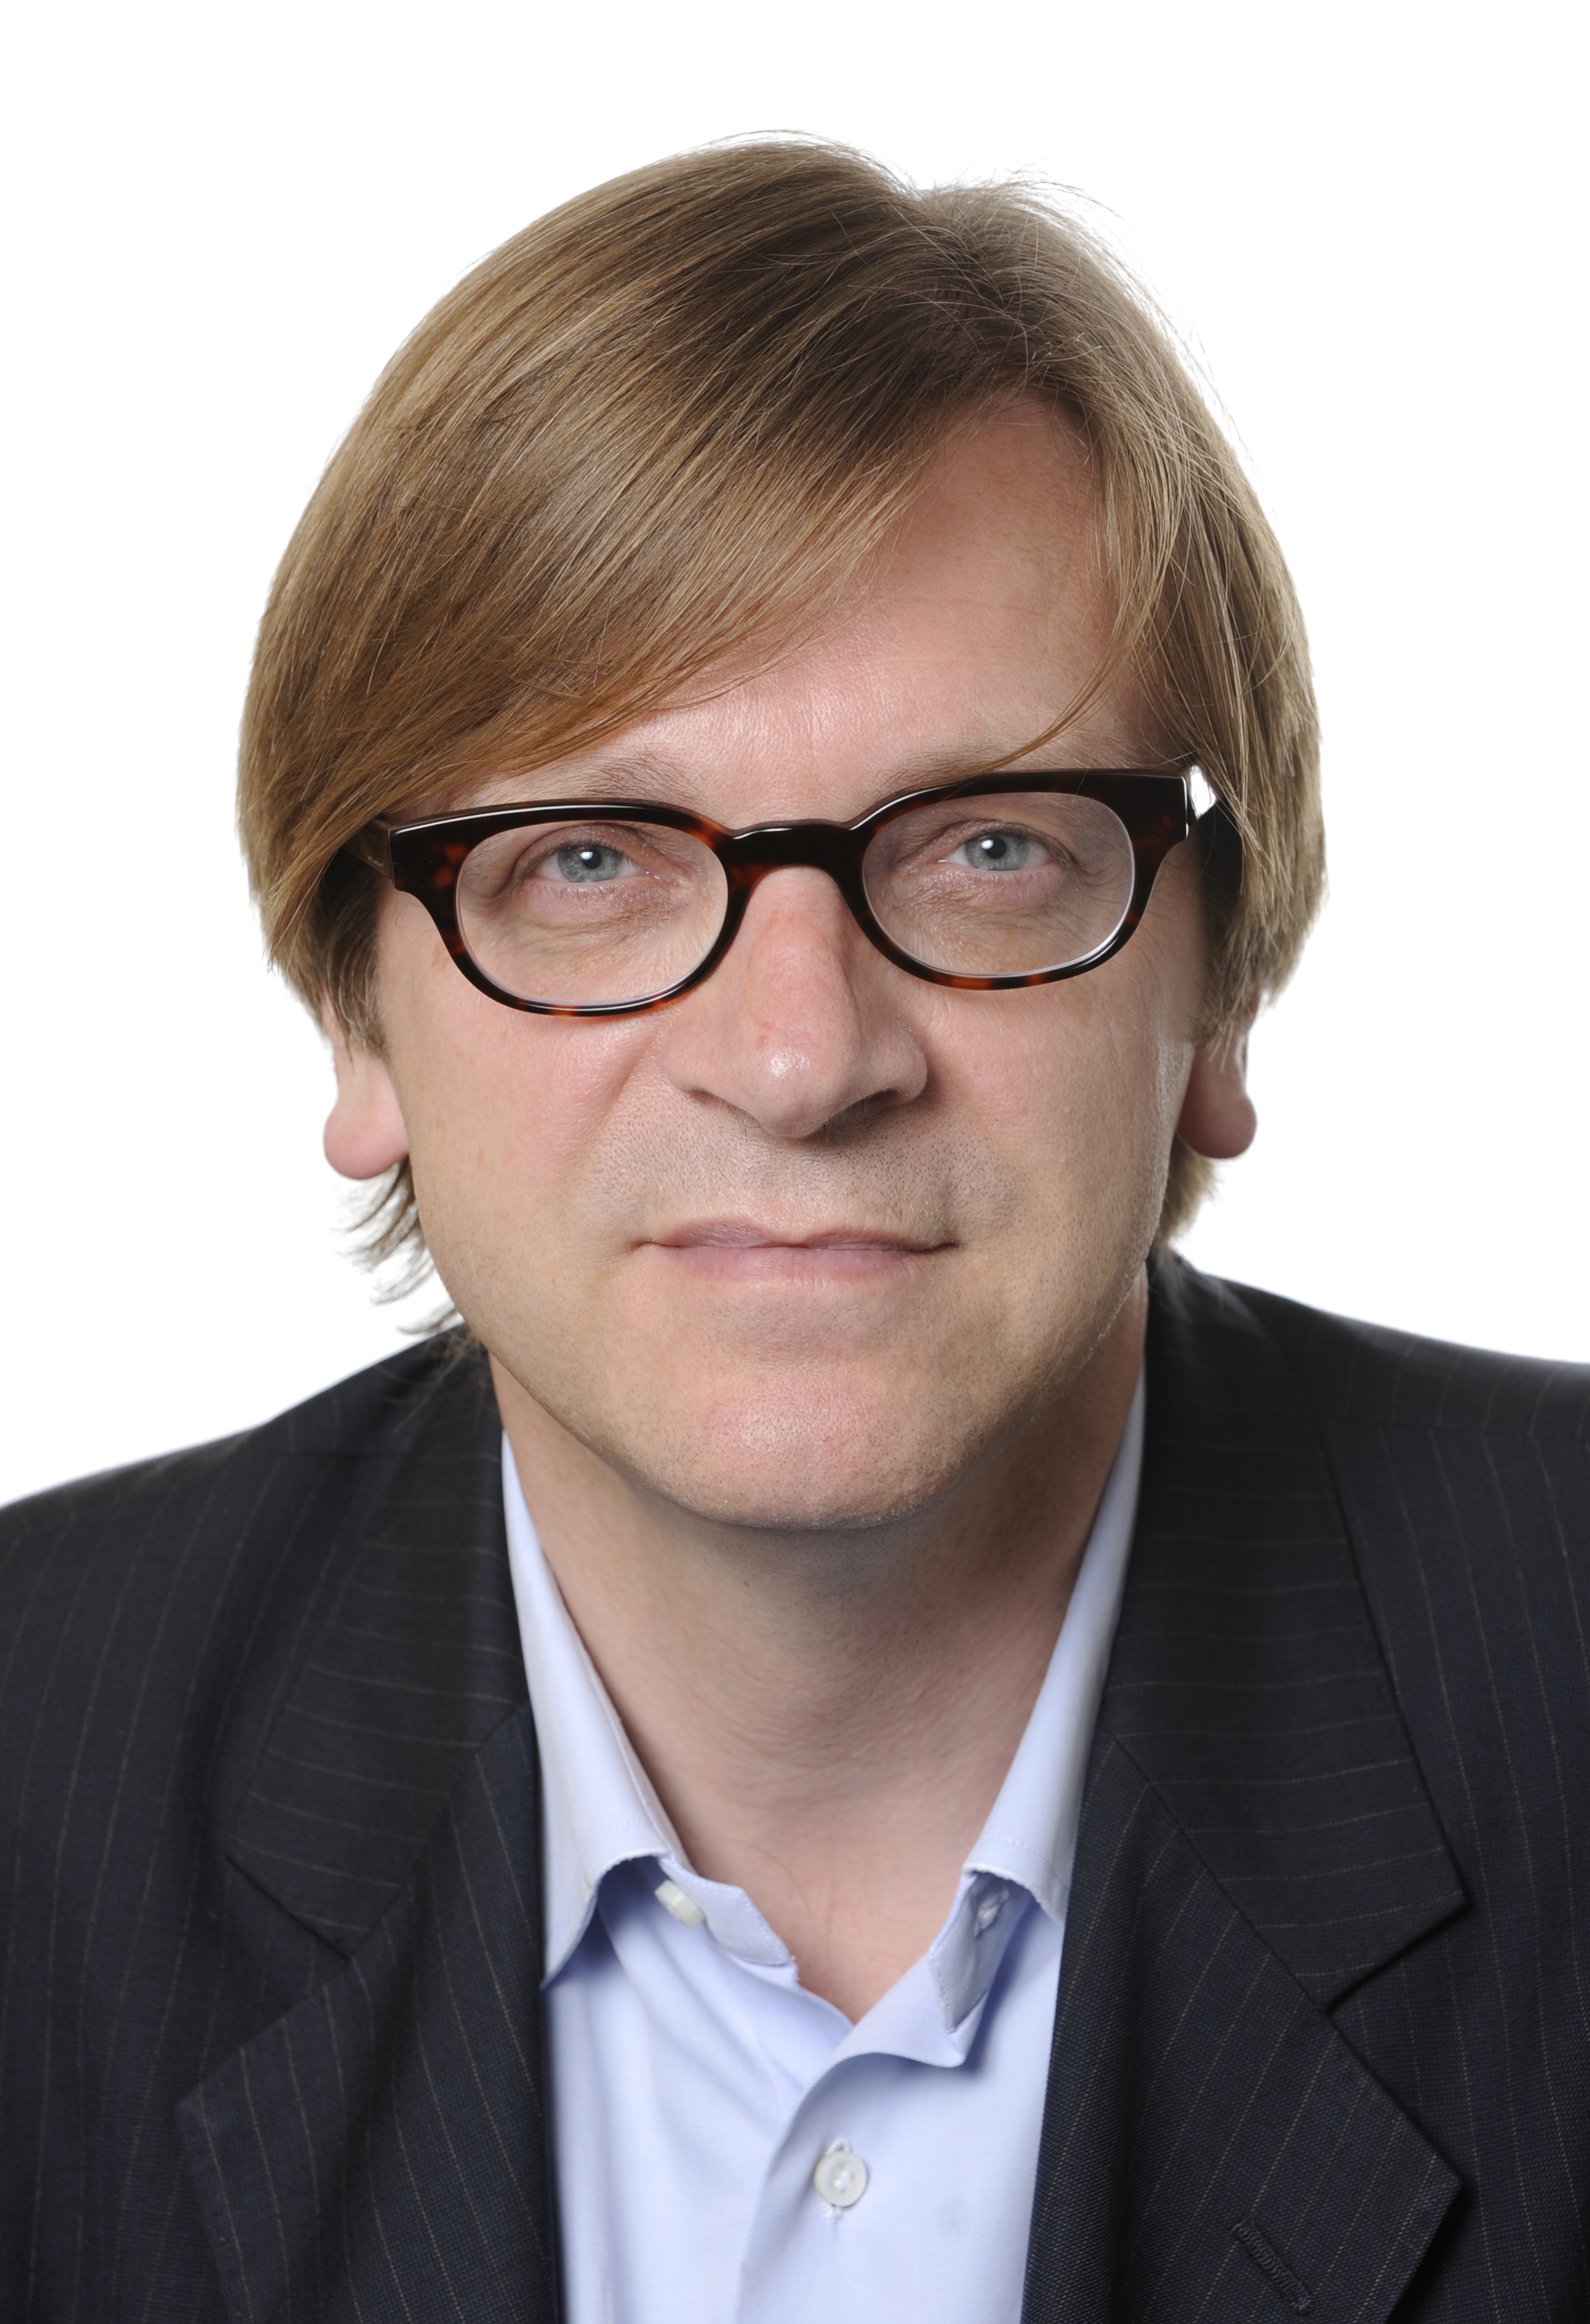 Wielkiego Reformatora który zastał Unię osłabioną a zostawi zjednoczoną, federalistę Guya Verhofstadta